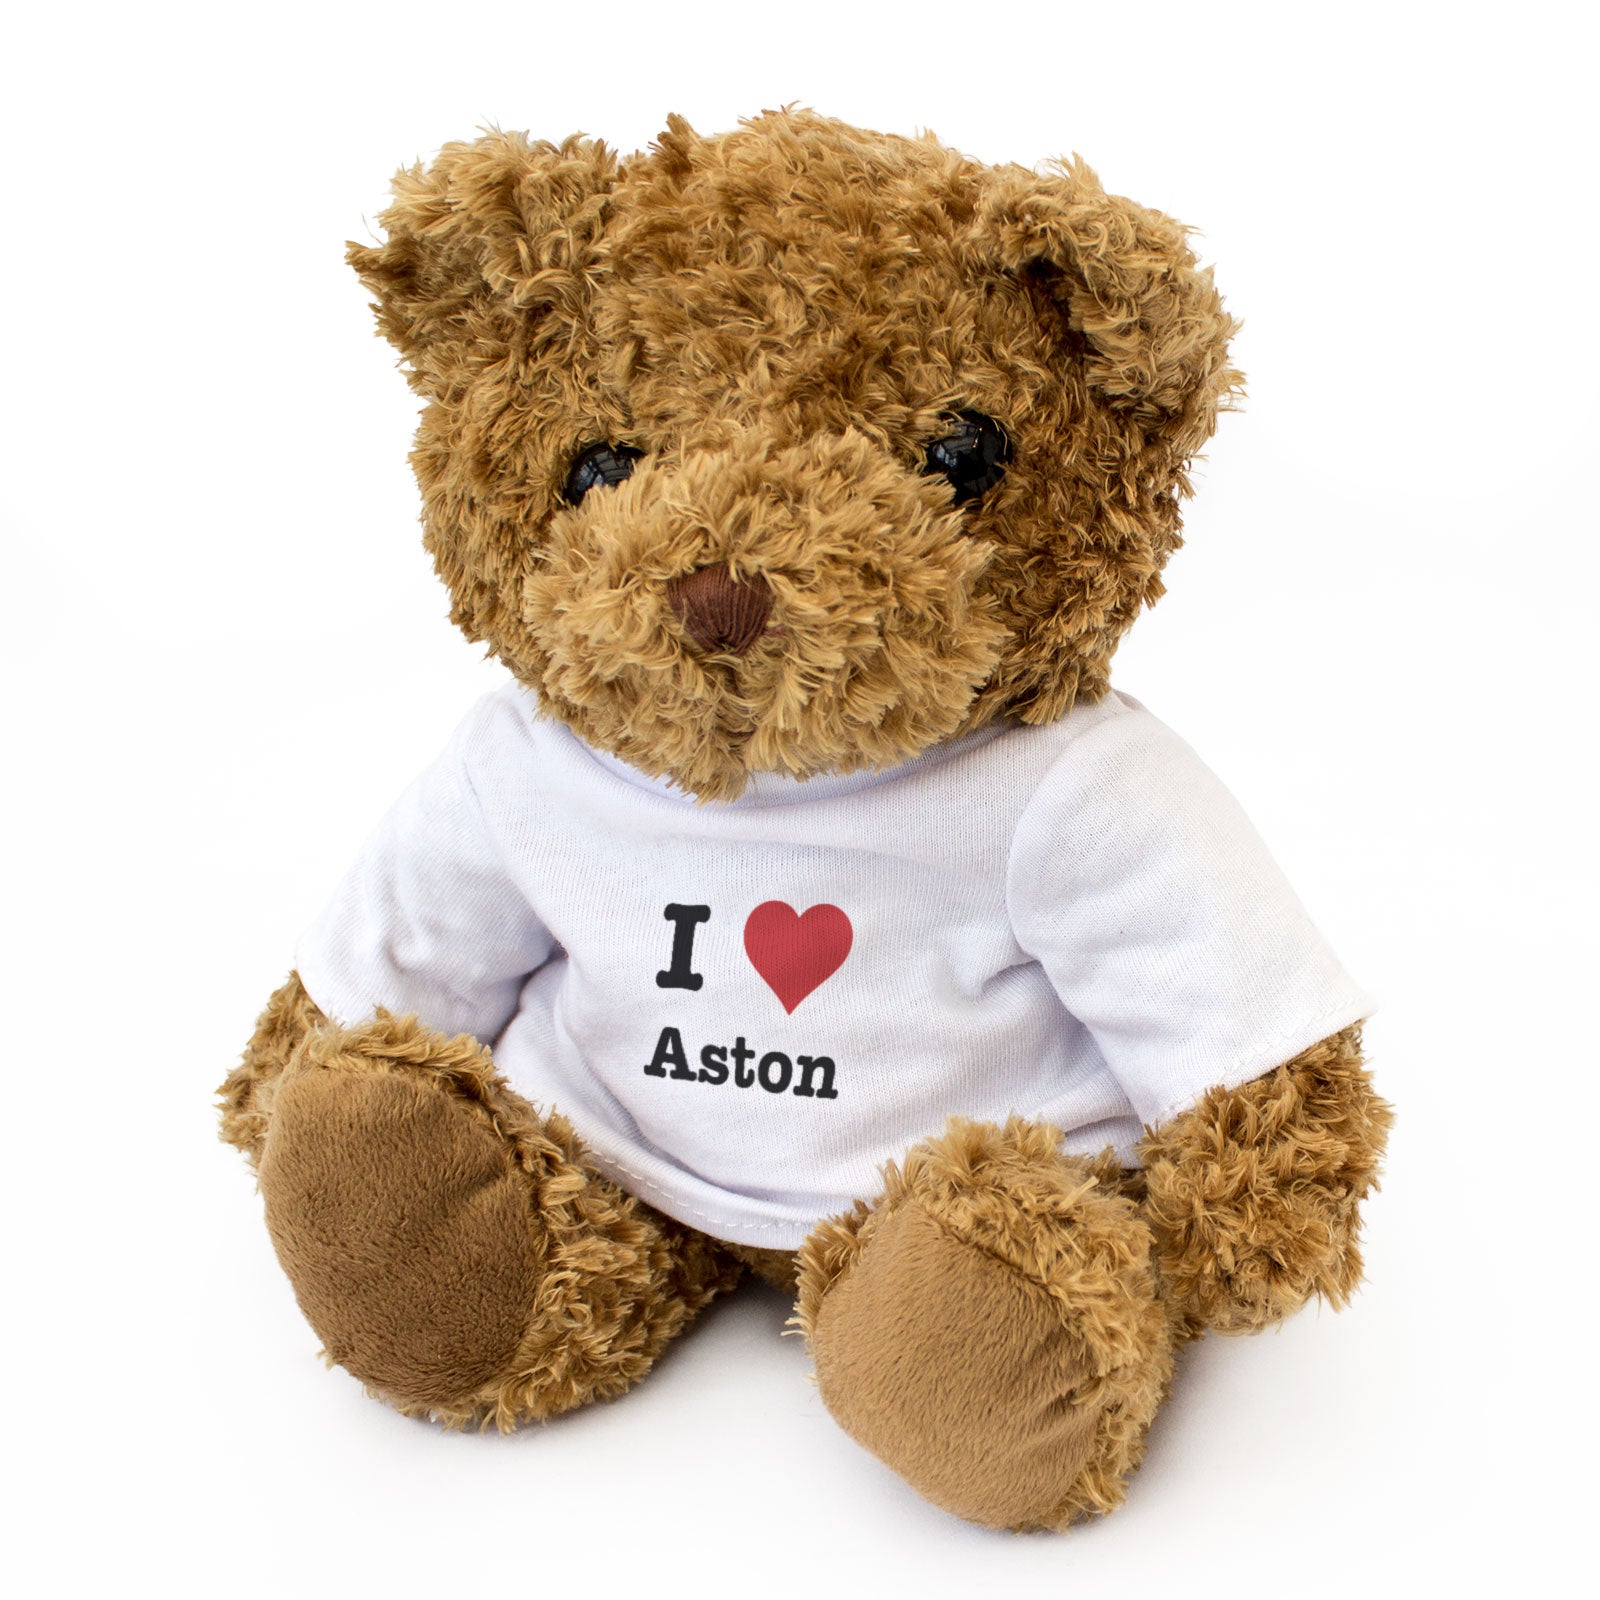 I Love Aston - Teddy Bear